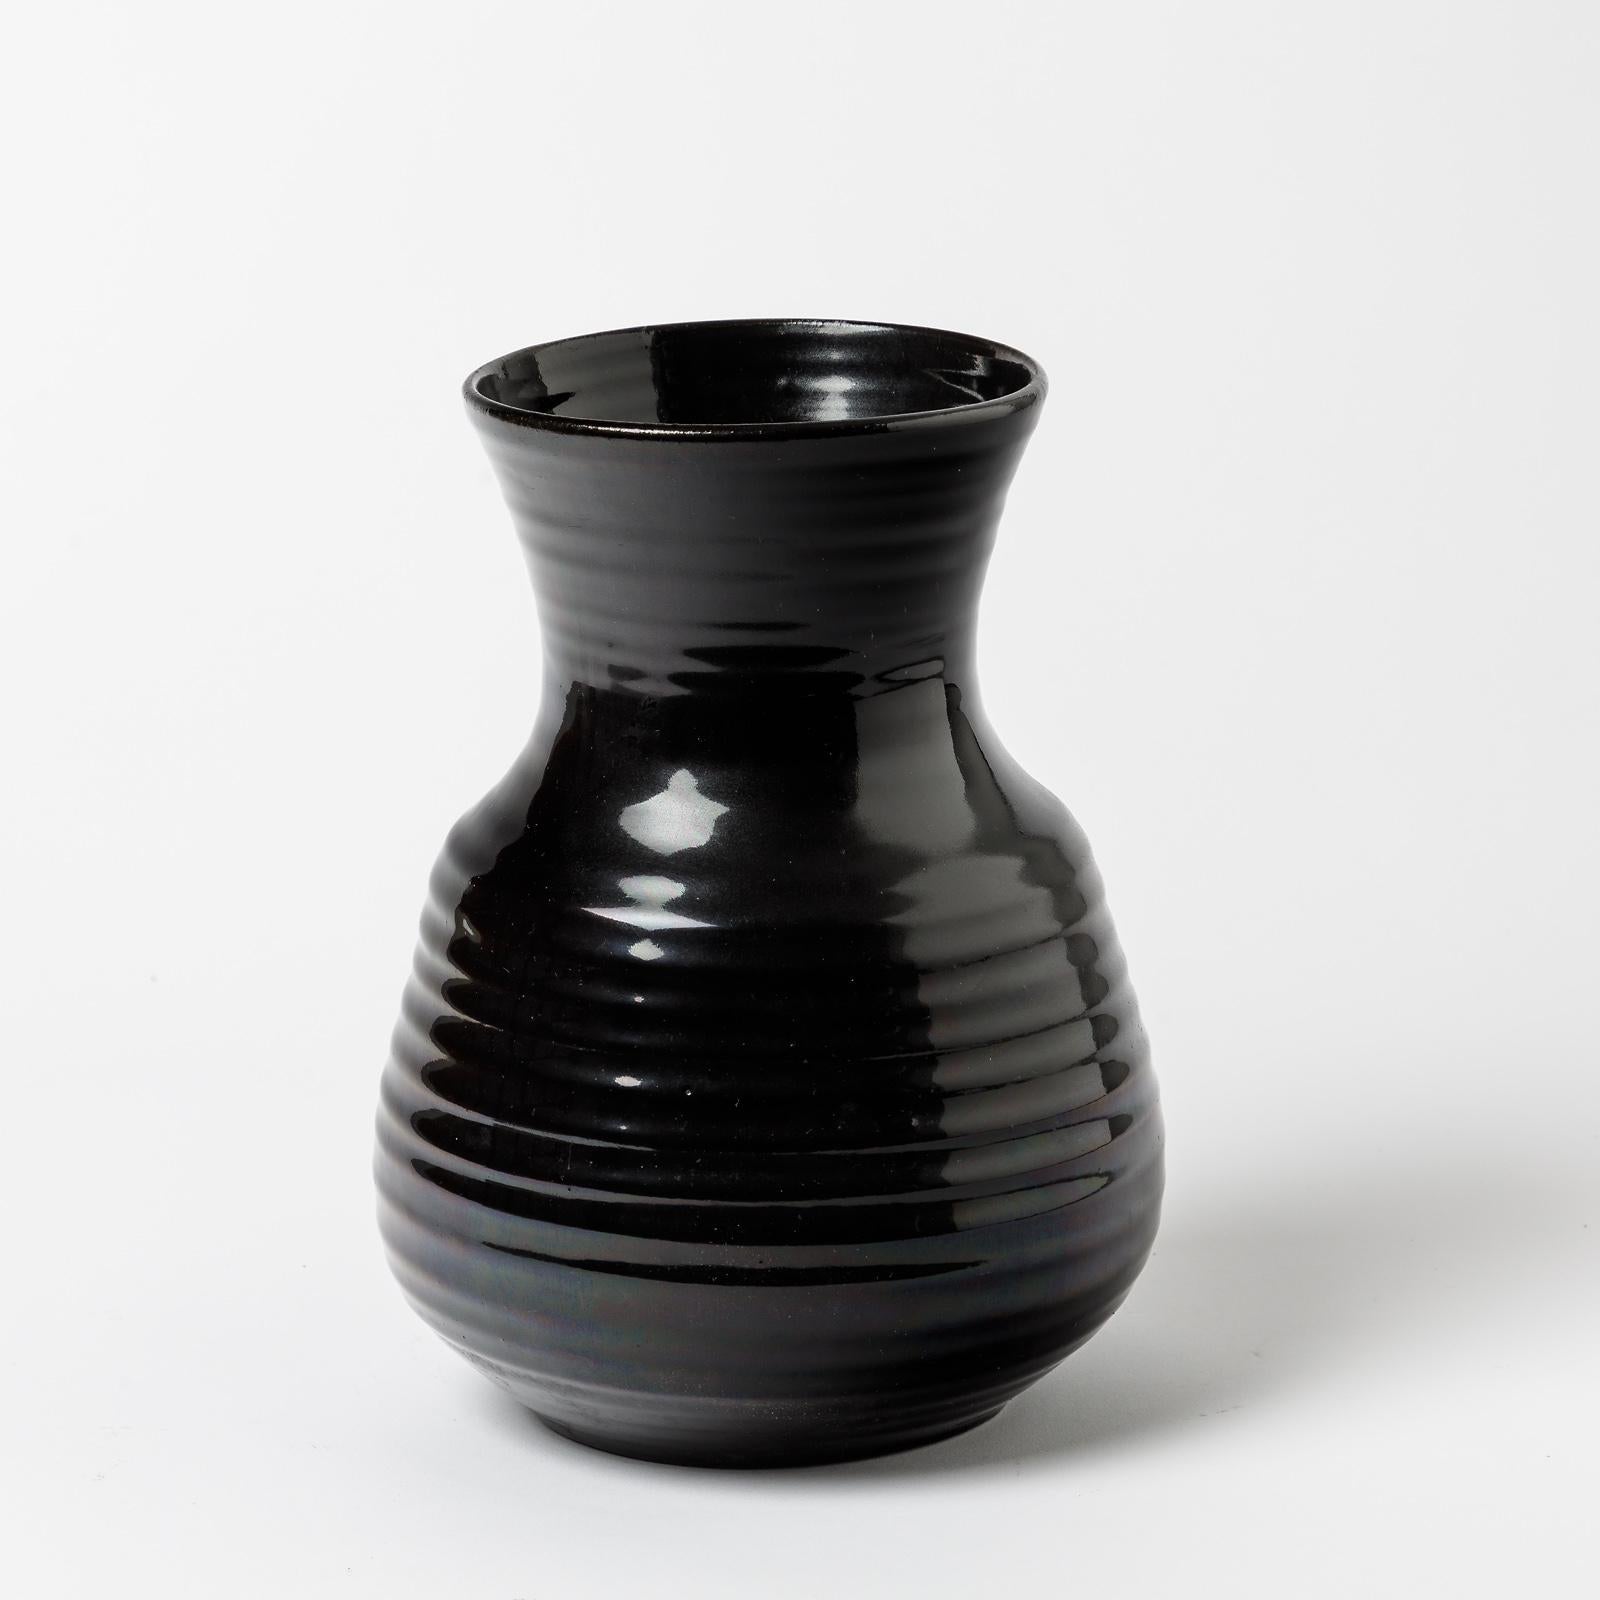 Eine Keramikvase mit schwarzer Glasur von Accolay.
Perfekter Originalzustand.
Unter dem Sockel signiert 